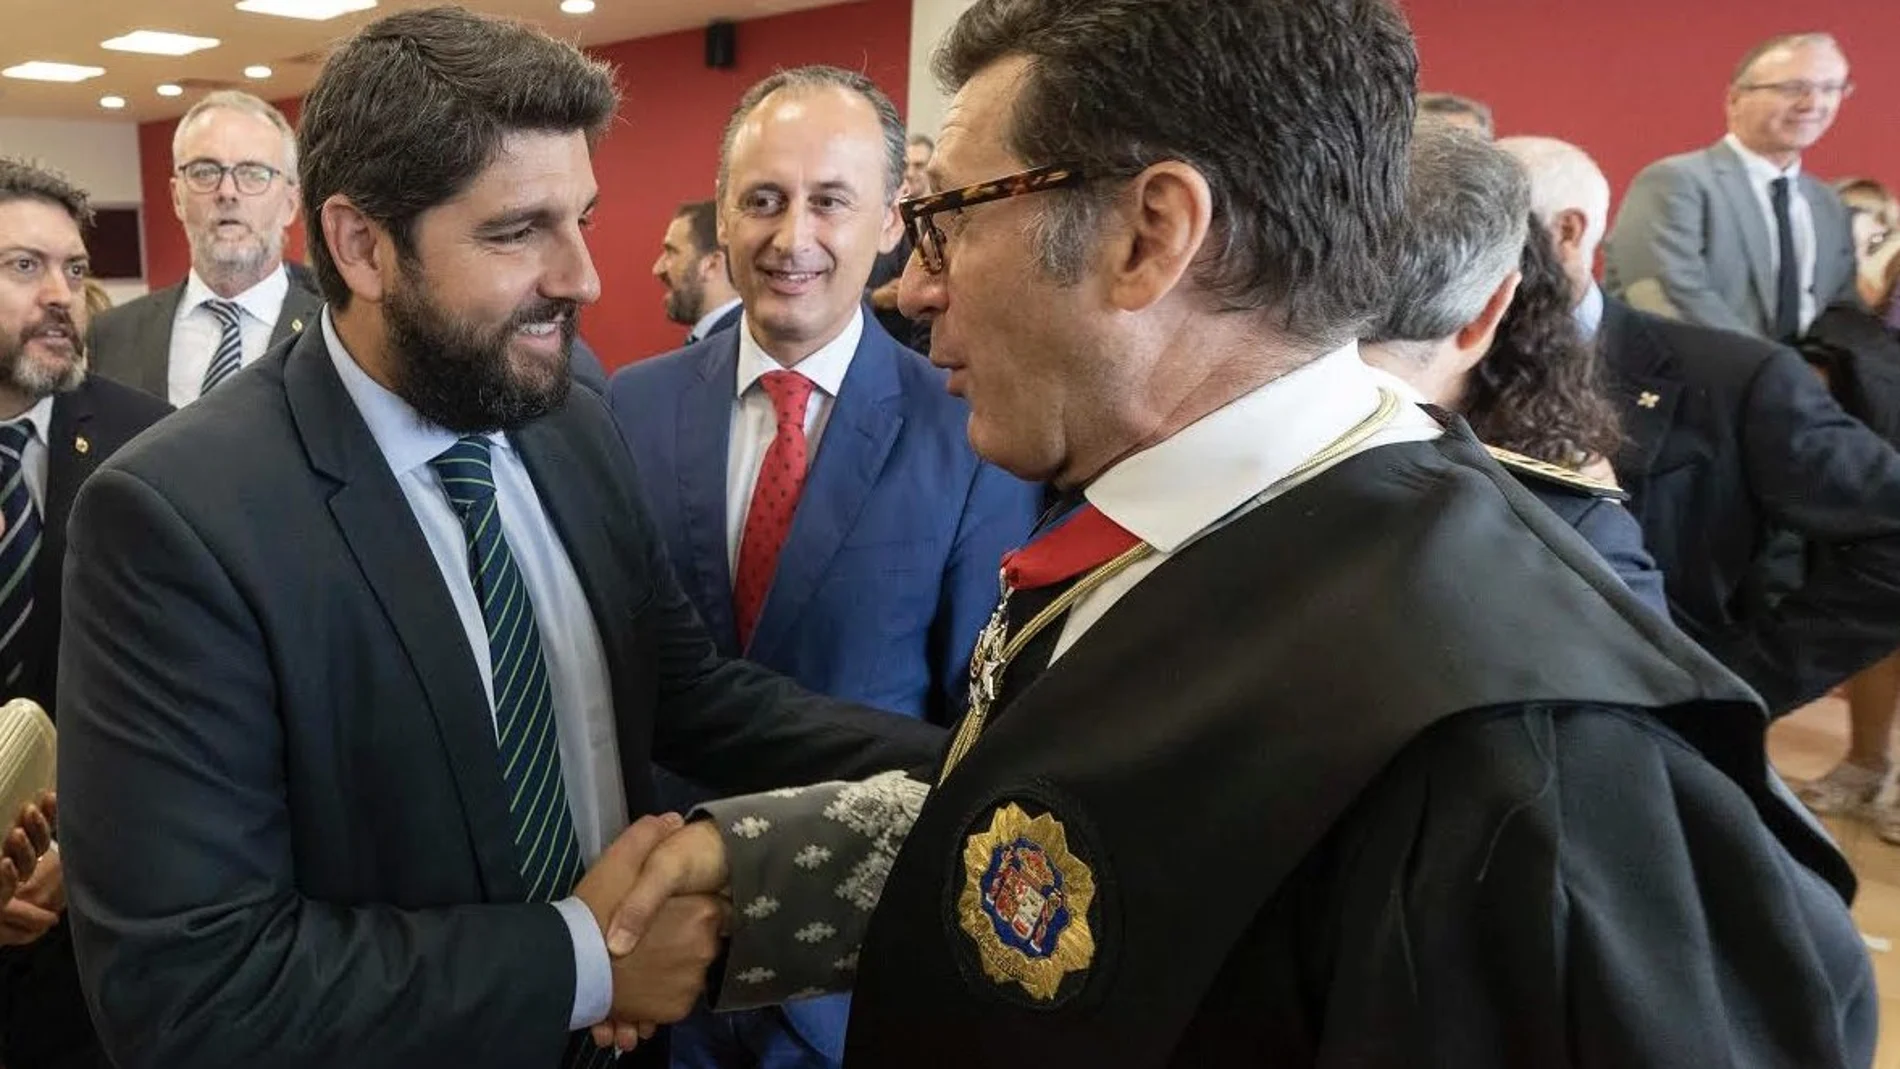 El presidente de la Comunidad, Fernando López Miras, asistió ayer al acto de apertura del Año Judicial en la Región de Murcia 2019-2020, junto al presidente del TSJ, Miguel Pasqual del Riquelme